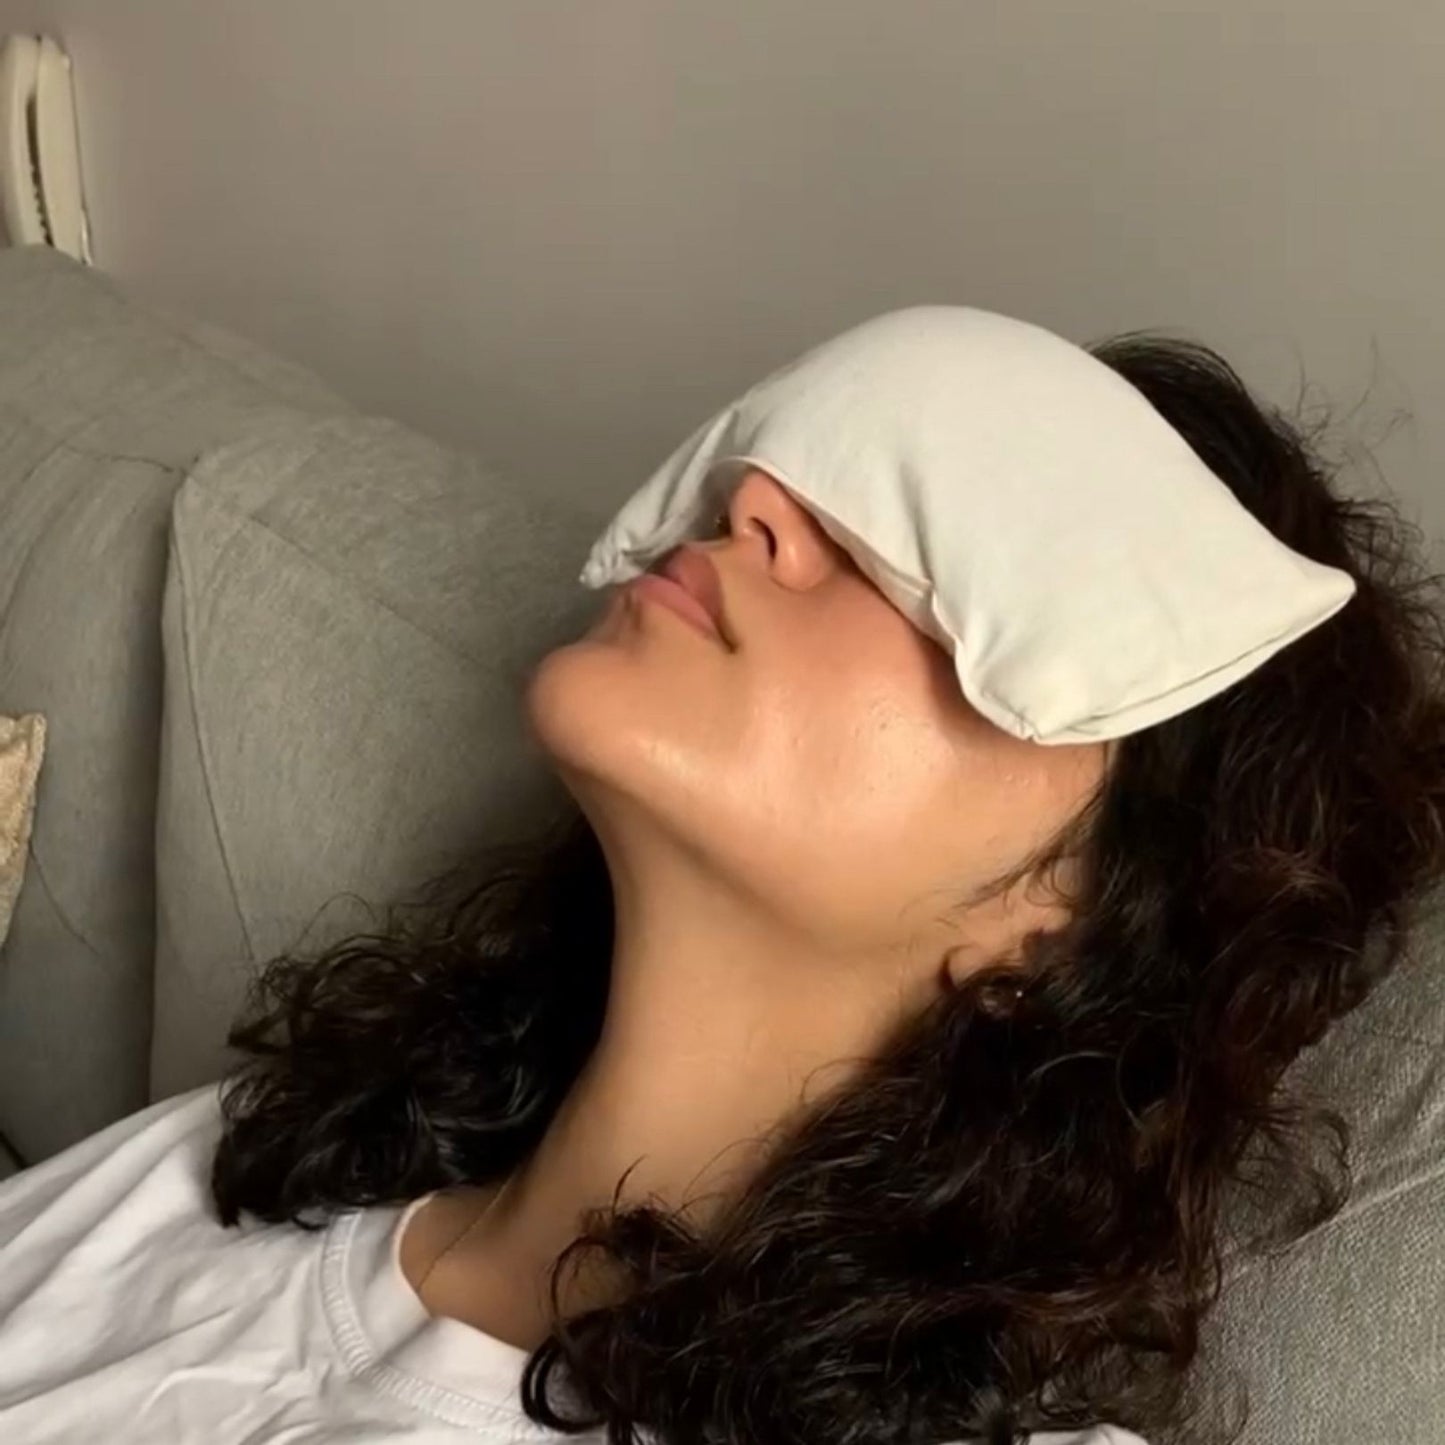 Aromatherapy Eye pillow Brown - 280 gms